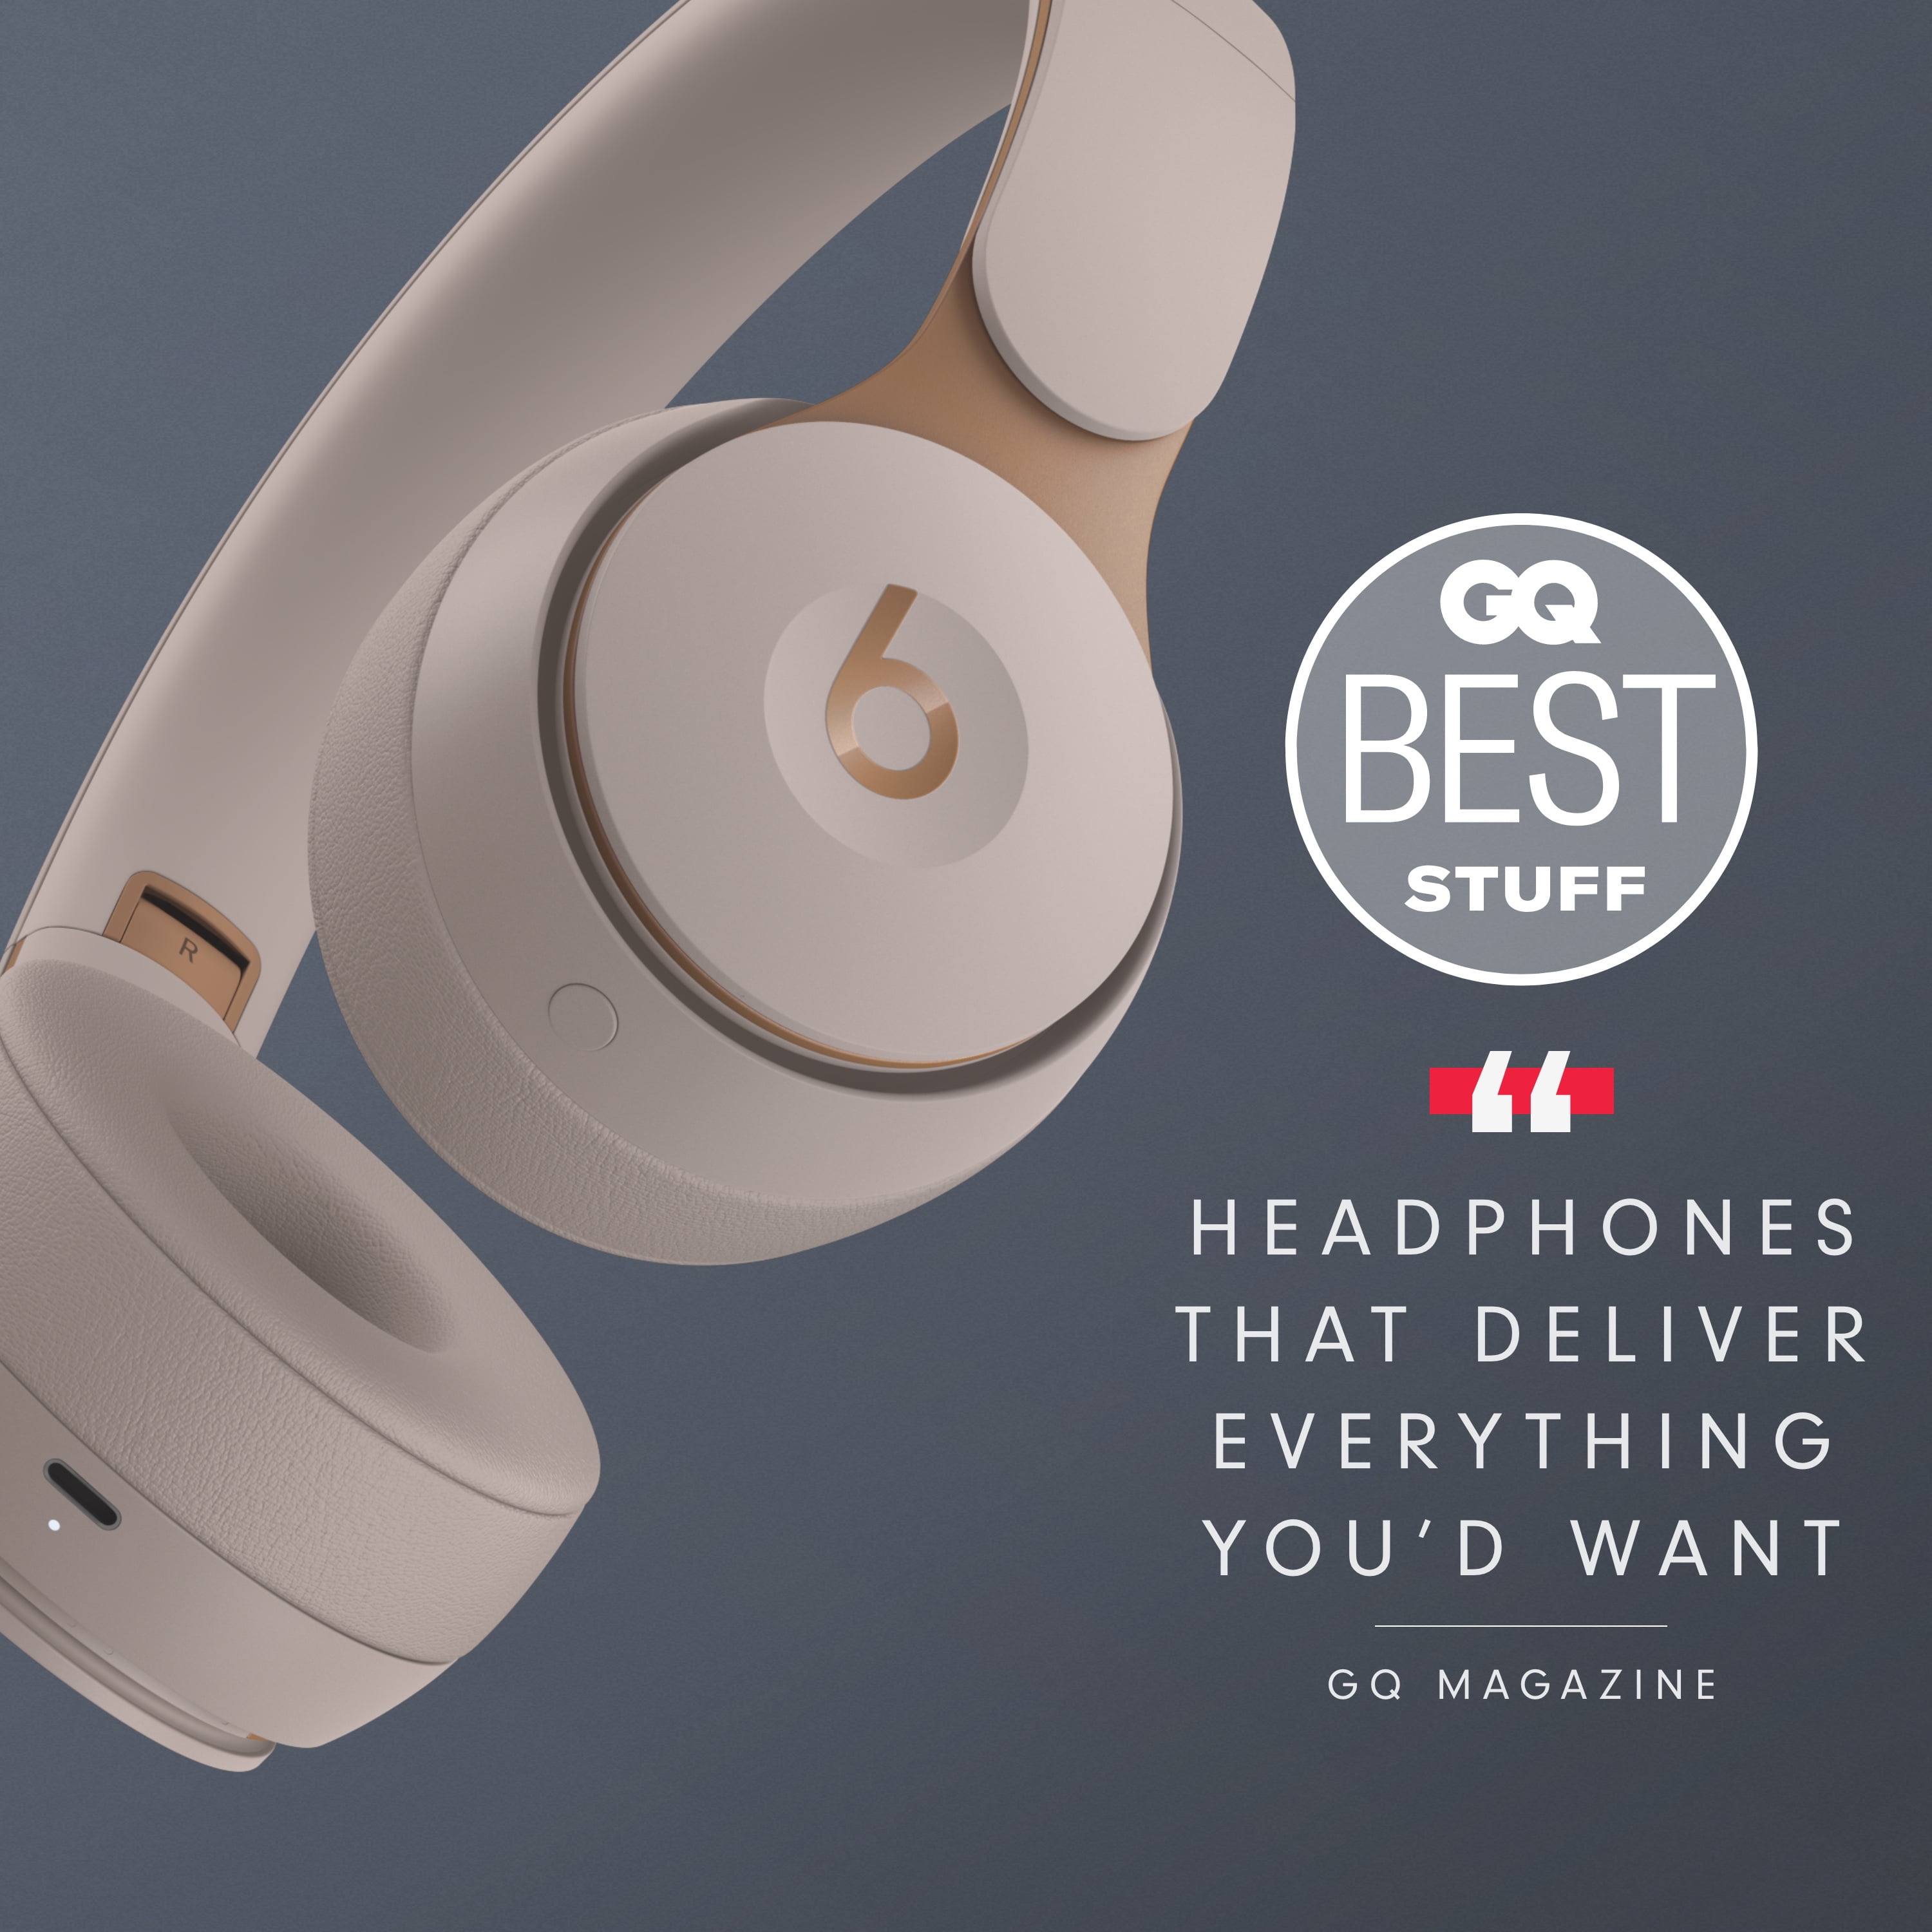 オーディオ機器 ヘッドフォン Beats Solo Pro Wireless Noise Cancelling On-Ear Headphones with 